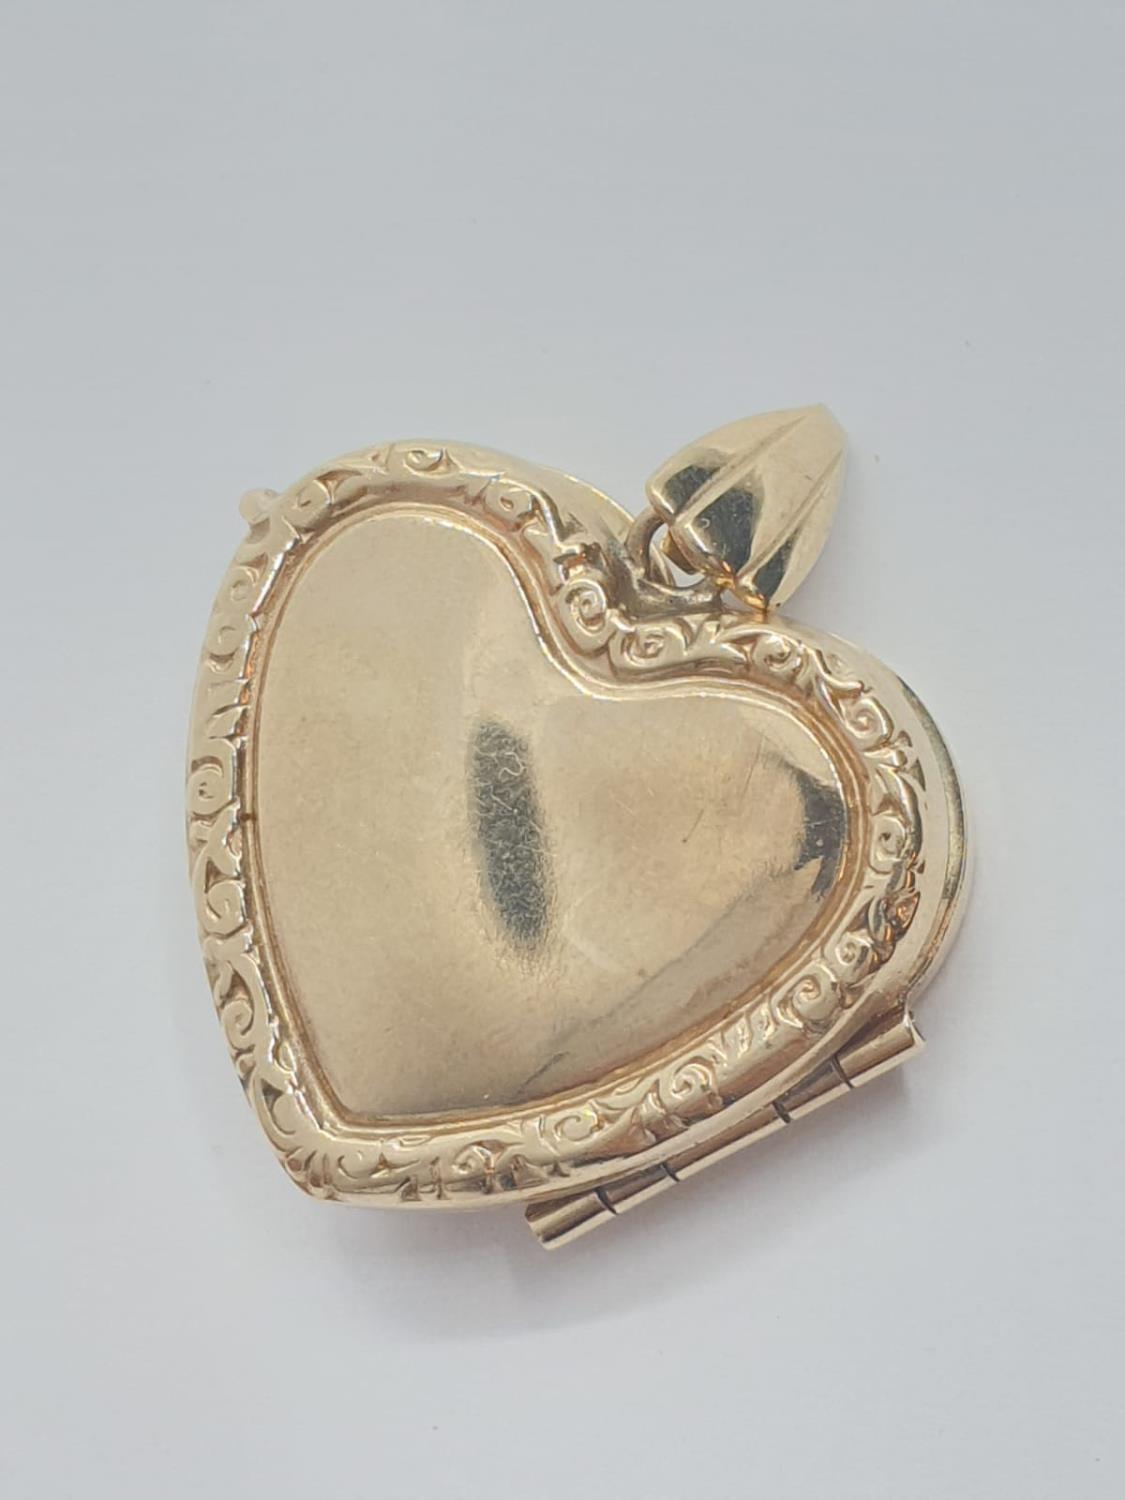 Vintage 9ct gold HEART LOCKET. 2.7g - Image 2 of 3